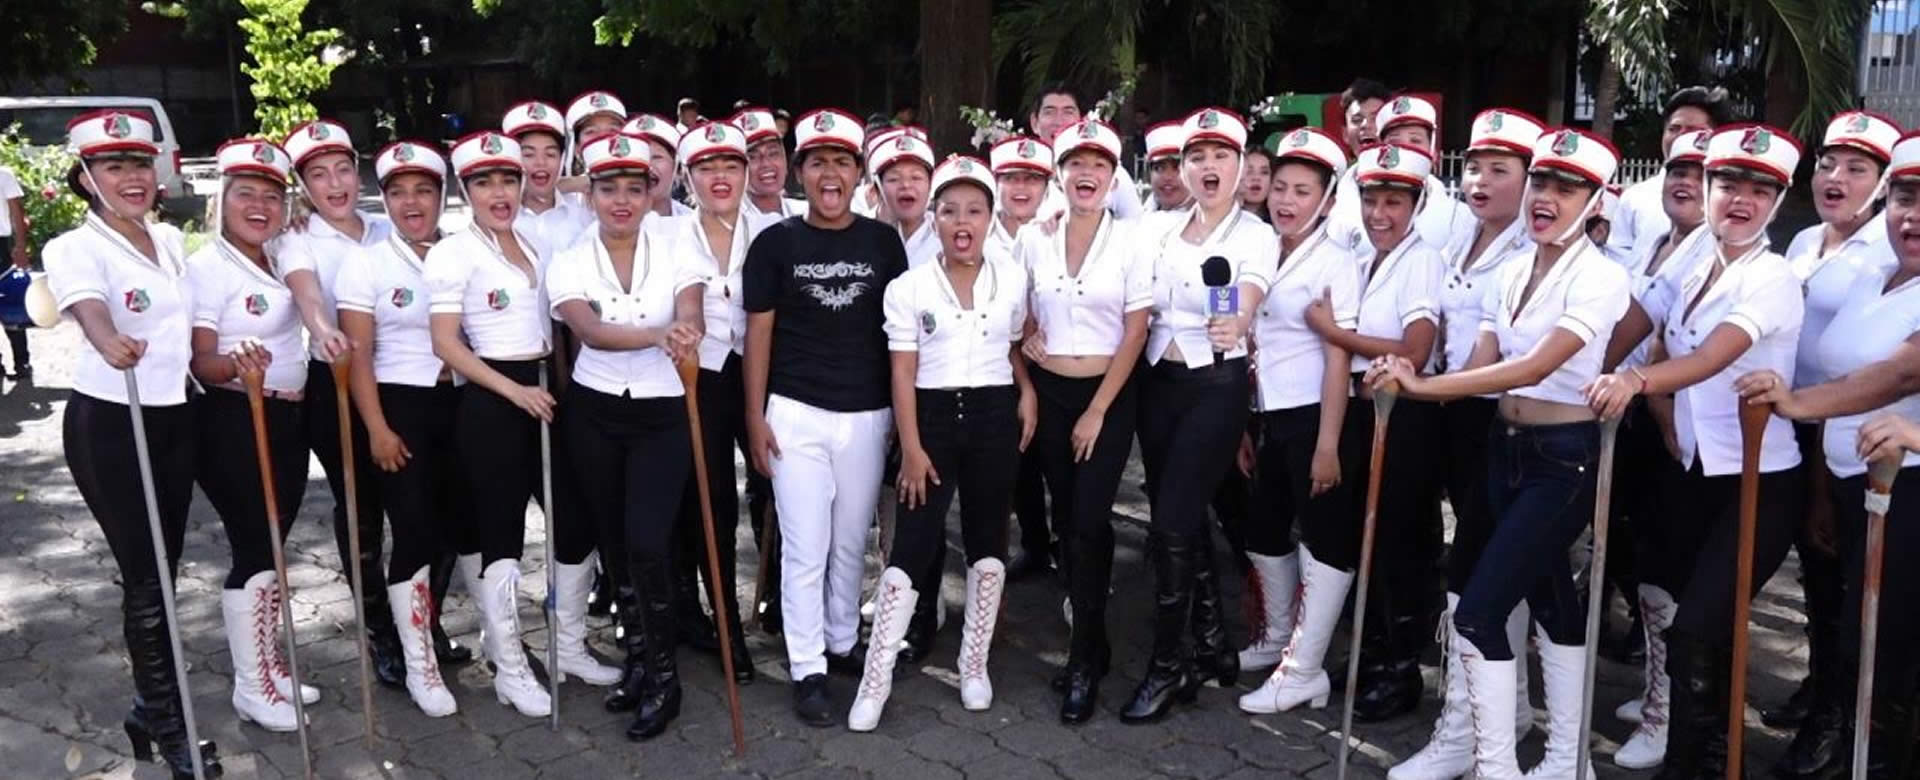 Instituto Ramírez Goyena, listo para presentarse en los Desfiles Patrios